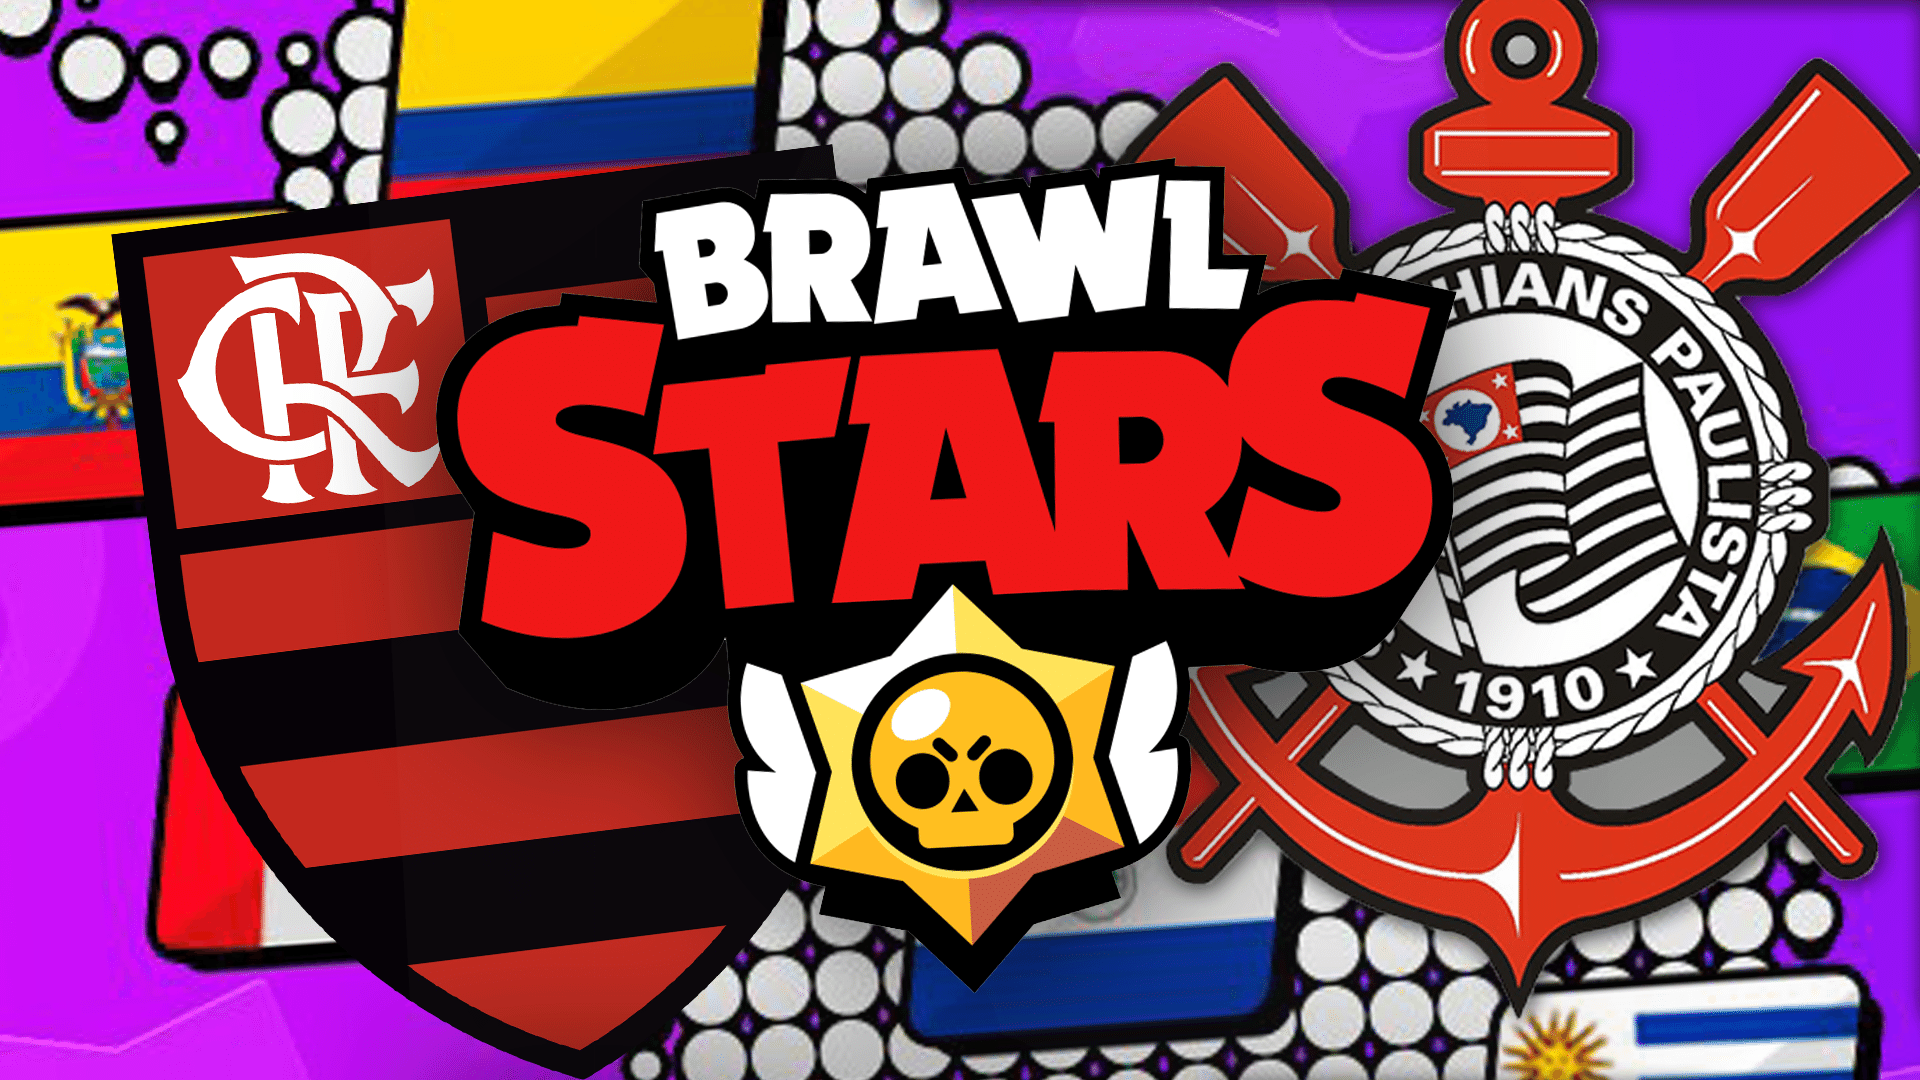 Corinthians E Flamengo Disputam Brawl Stars Master League Veja Times - o primeiro brother lançado no brawl star